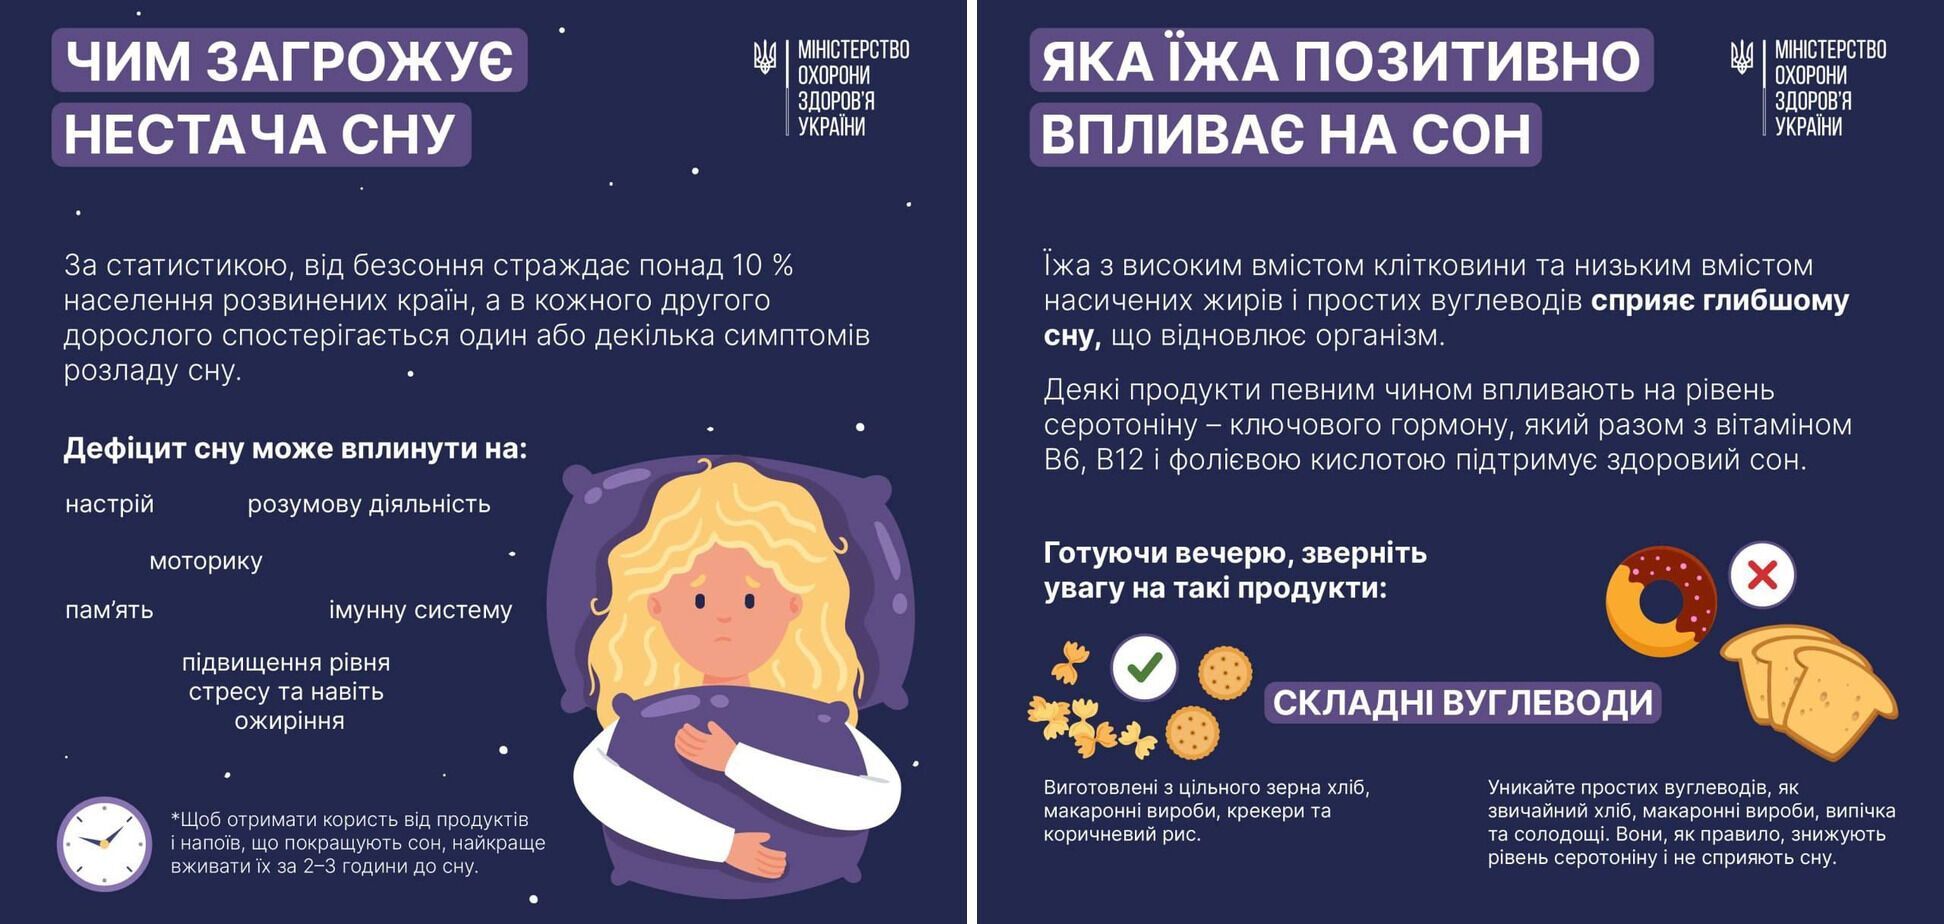 Елена Зеленская поделилась успехами лечения расстройства сна. Какую книгу читает первая леди